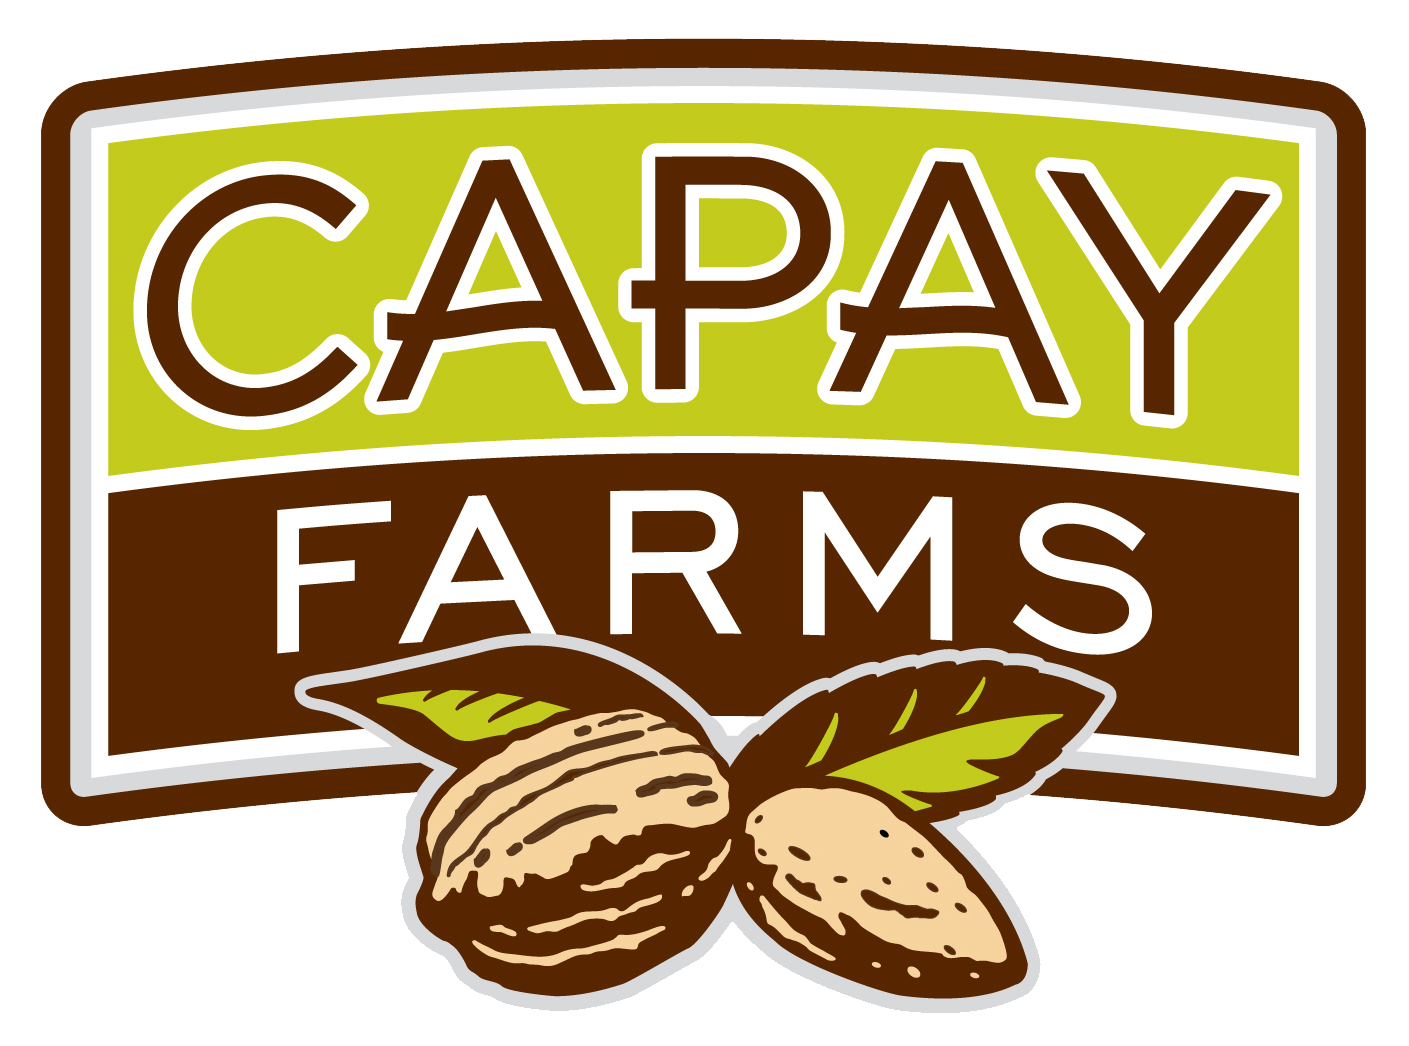 Capay Farms